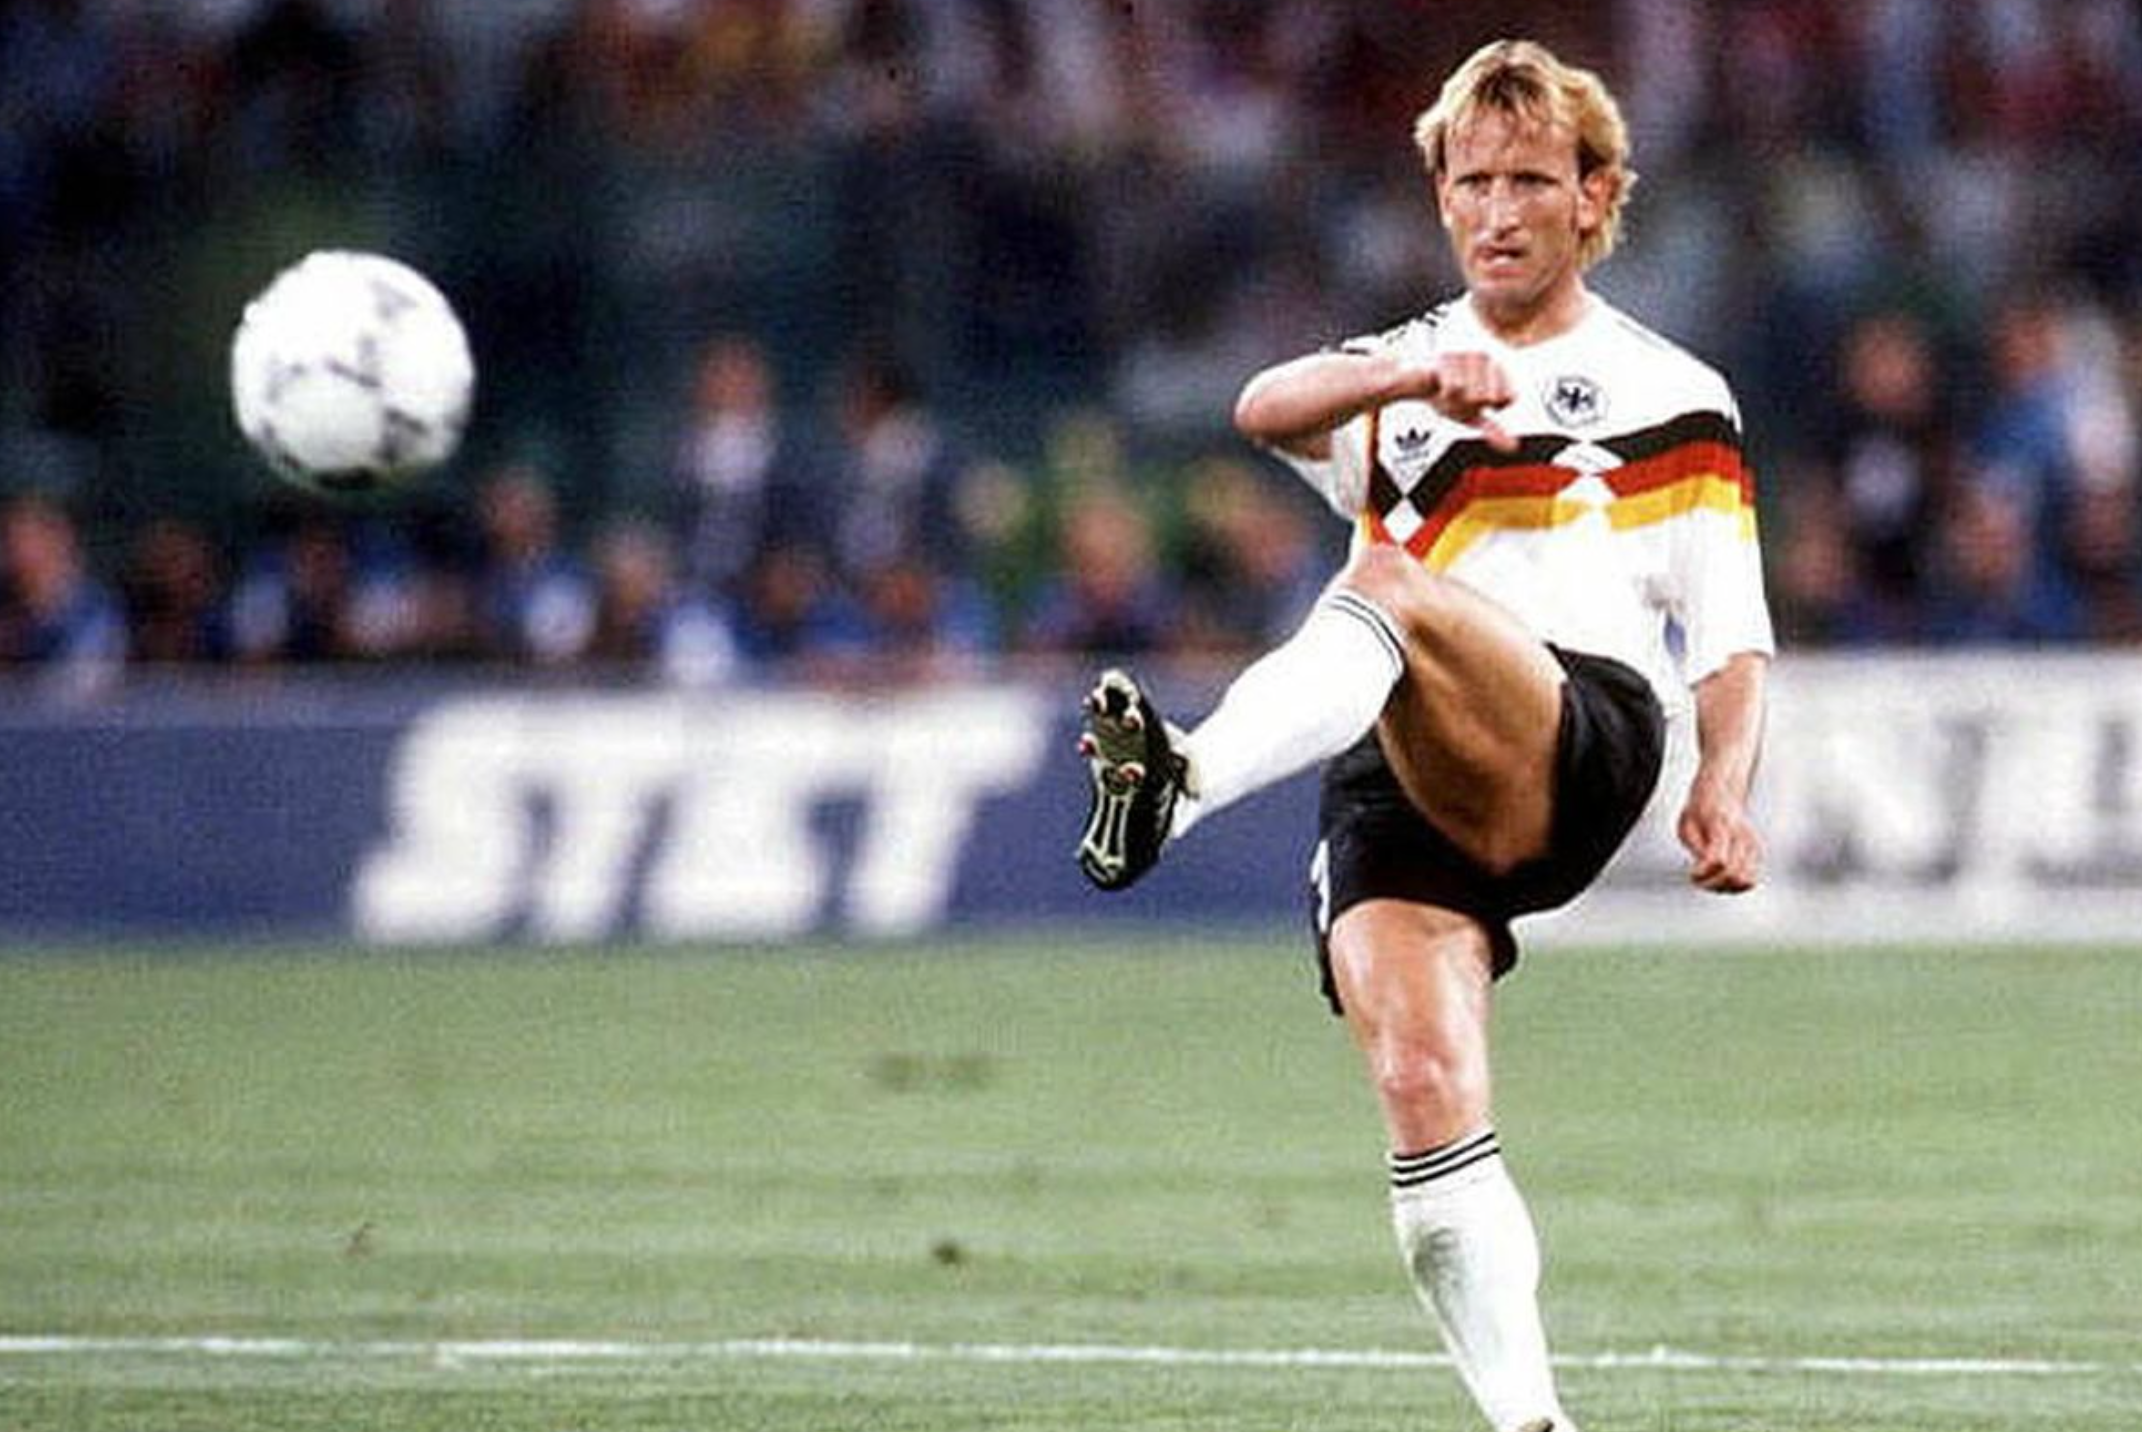 Muere el alemán Andreas Brehme, autor del gol decisivo en 1990 vs Argentina